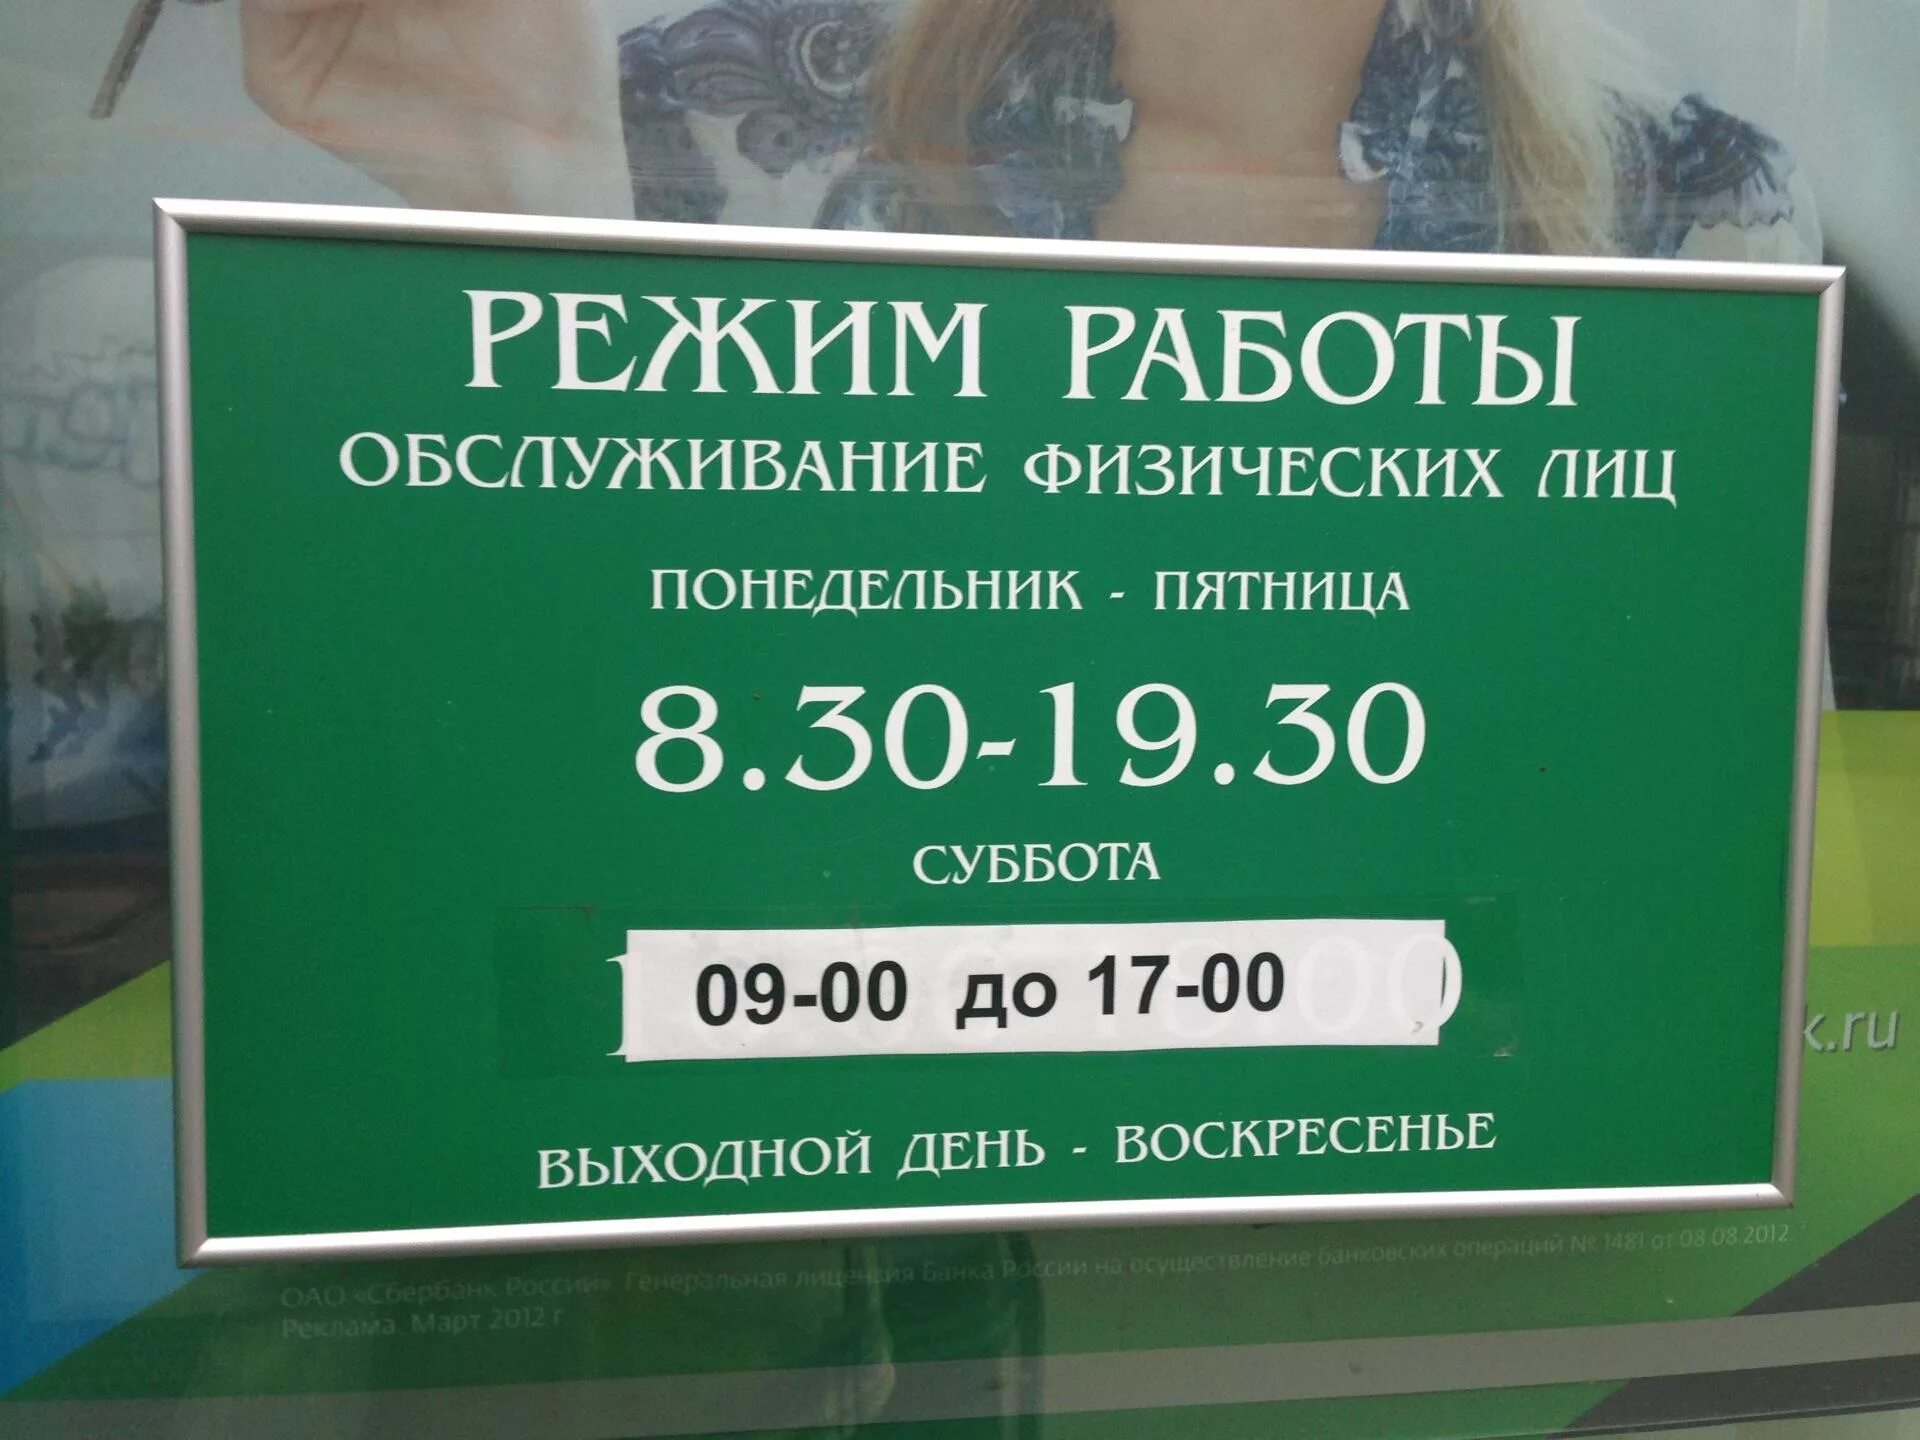 Работа сбербанка завтра в москве. Рабочие дни Сбербанка. График работы Сбербанка в Москве. Сбербанк работает в субботу. Суббота воскресенье Сбербанк работает.